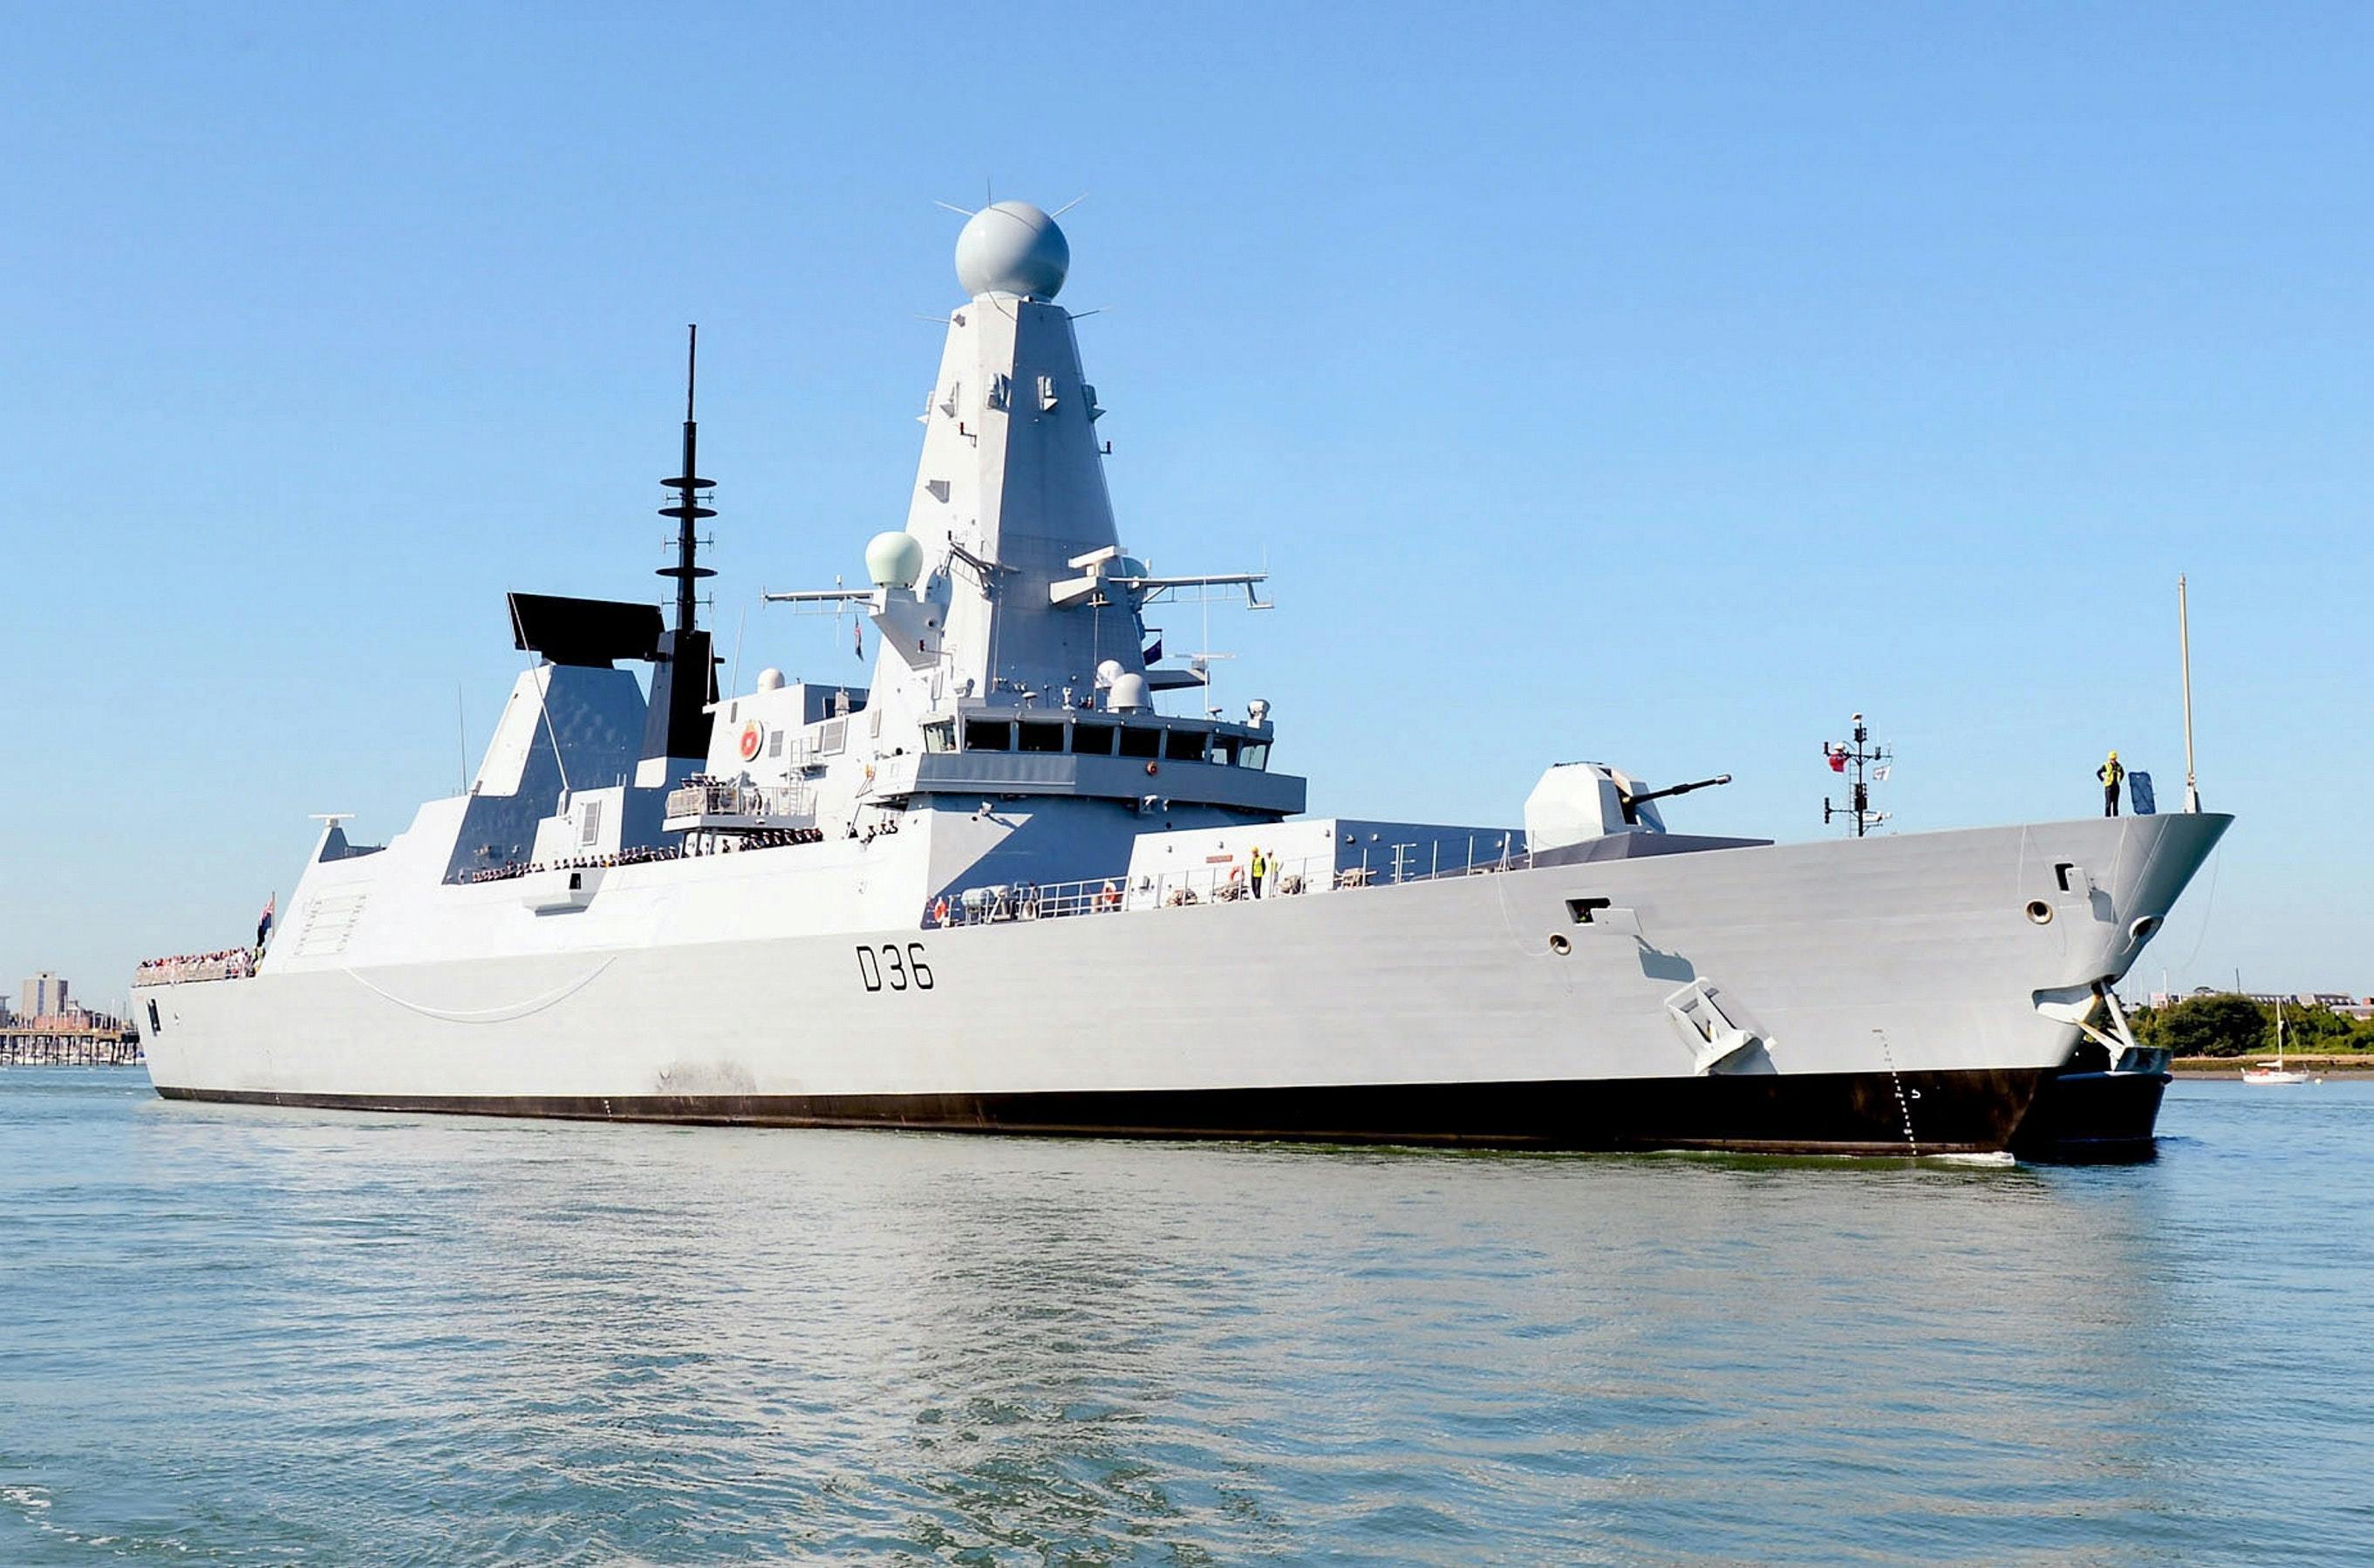 Royal_Navy_Destroyer_HMS_Defender_D36.jpg